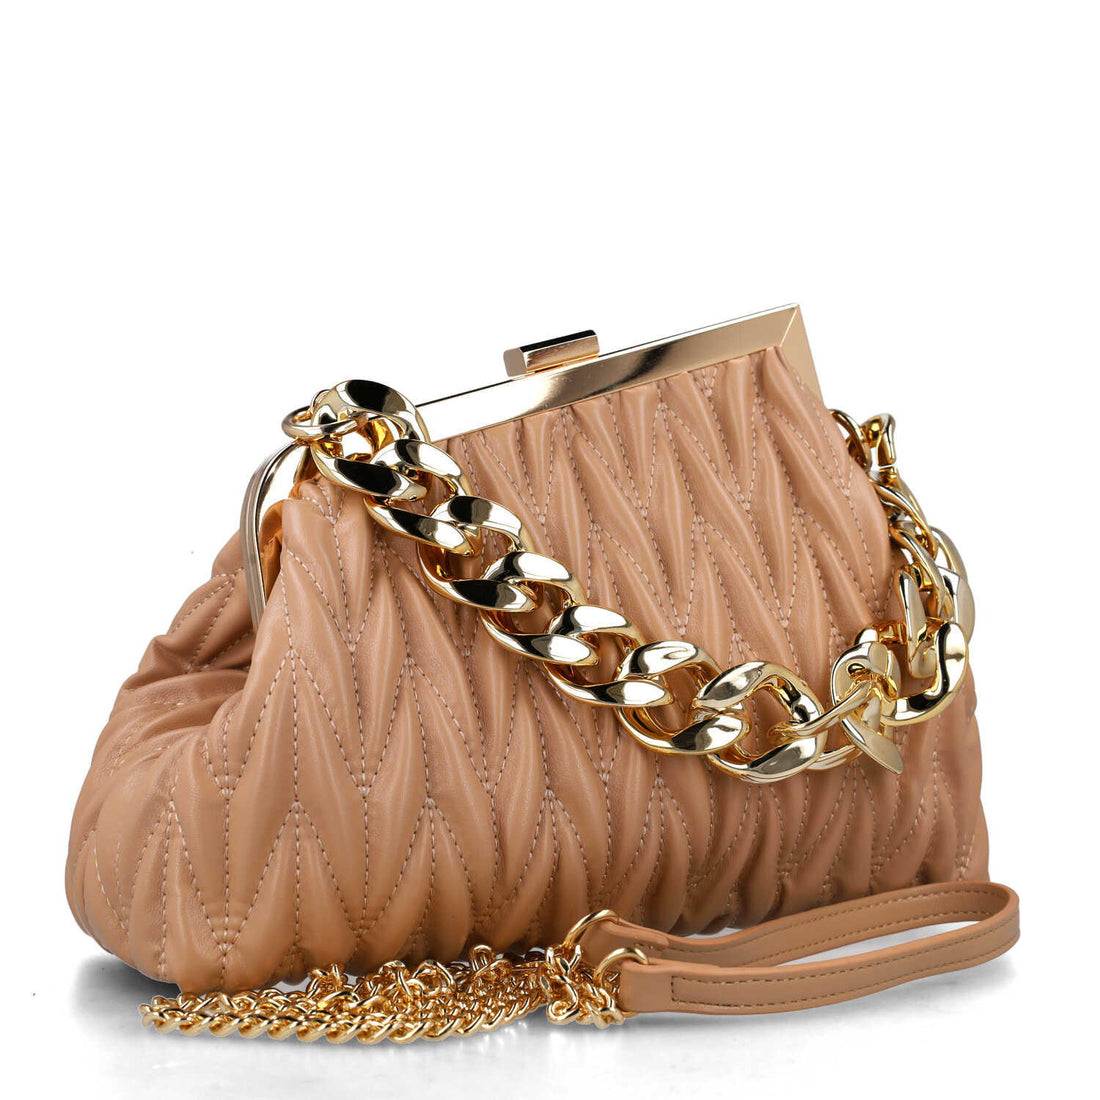 Beige Handbag With Chain Strap_85678_42_02